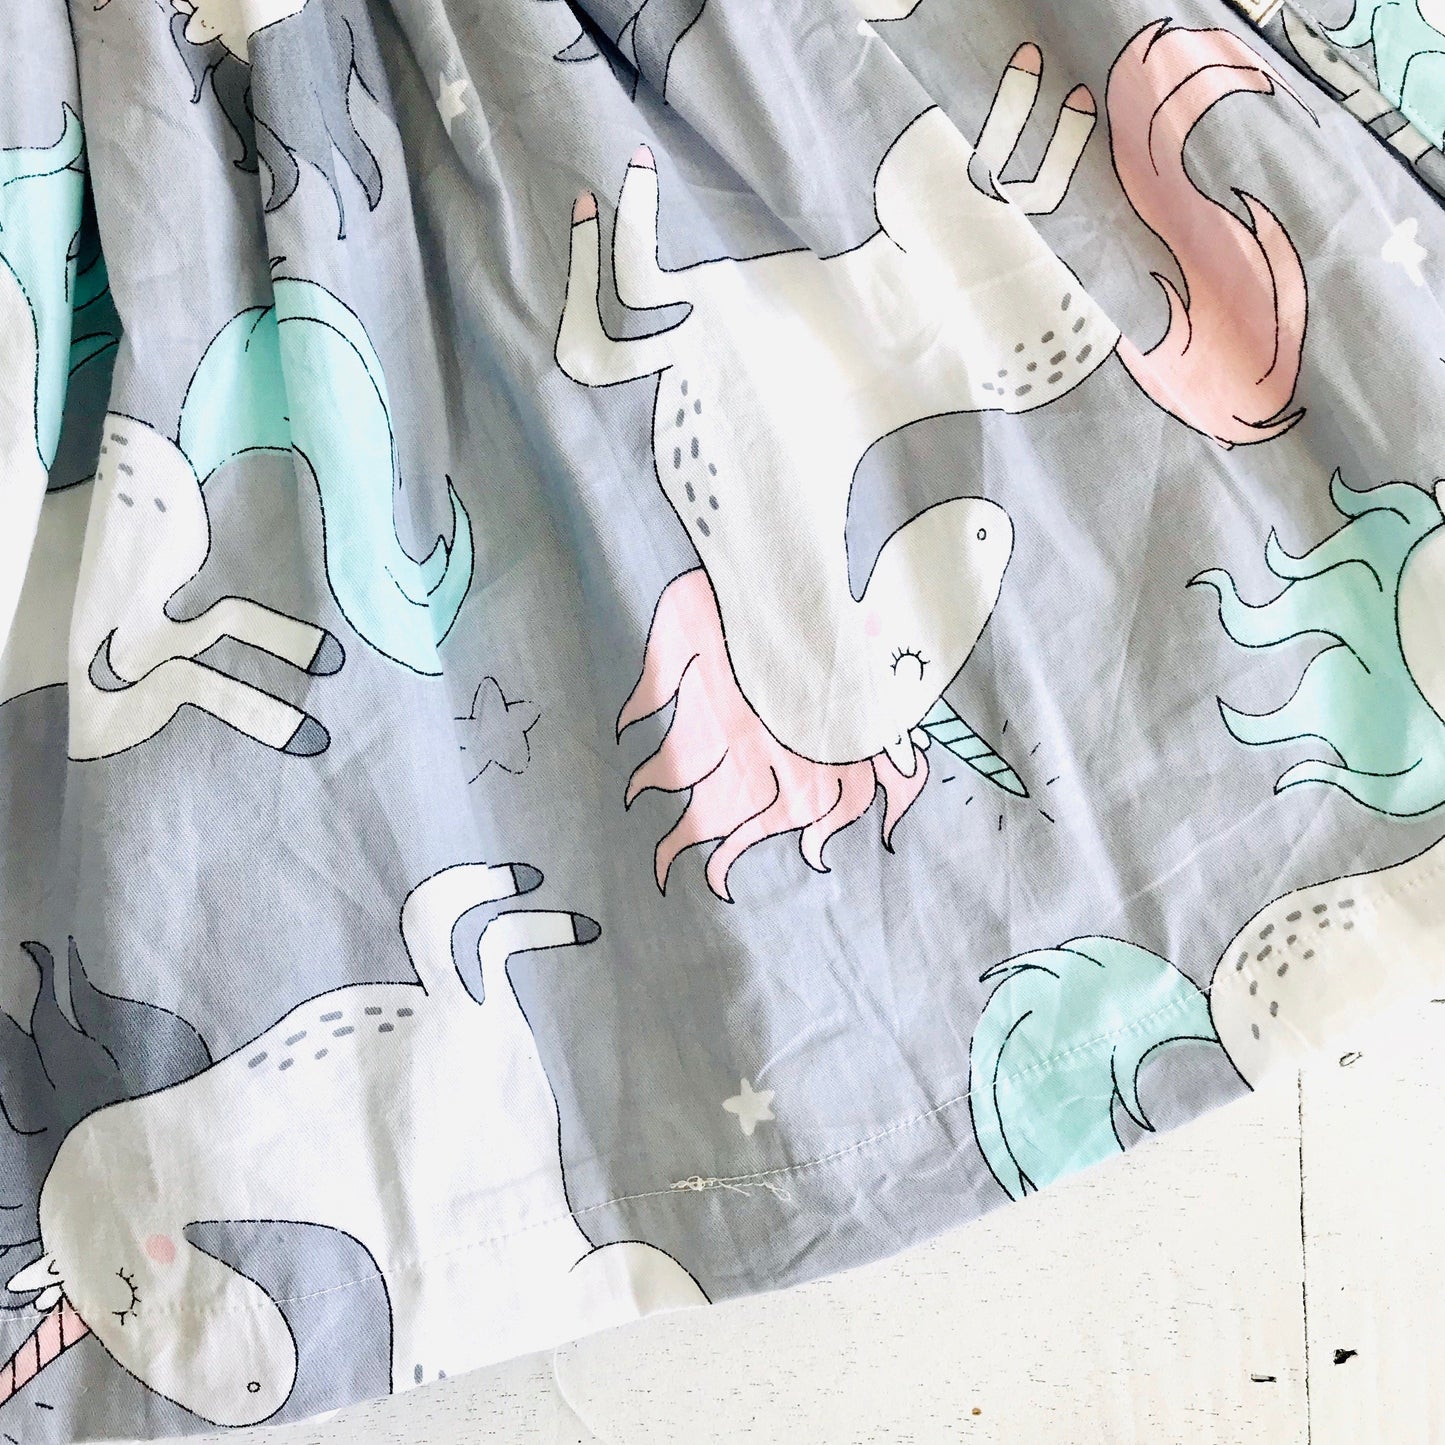 Poppy Dress in Unicorn Gray Print - Lil' Tati